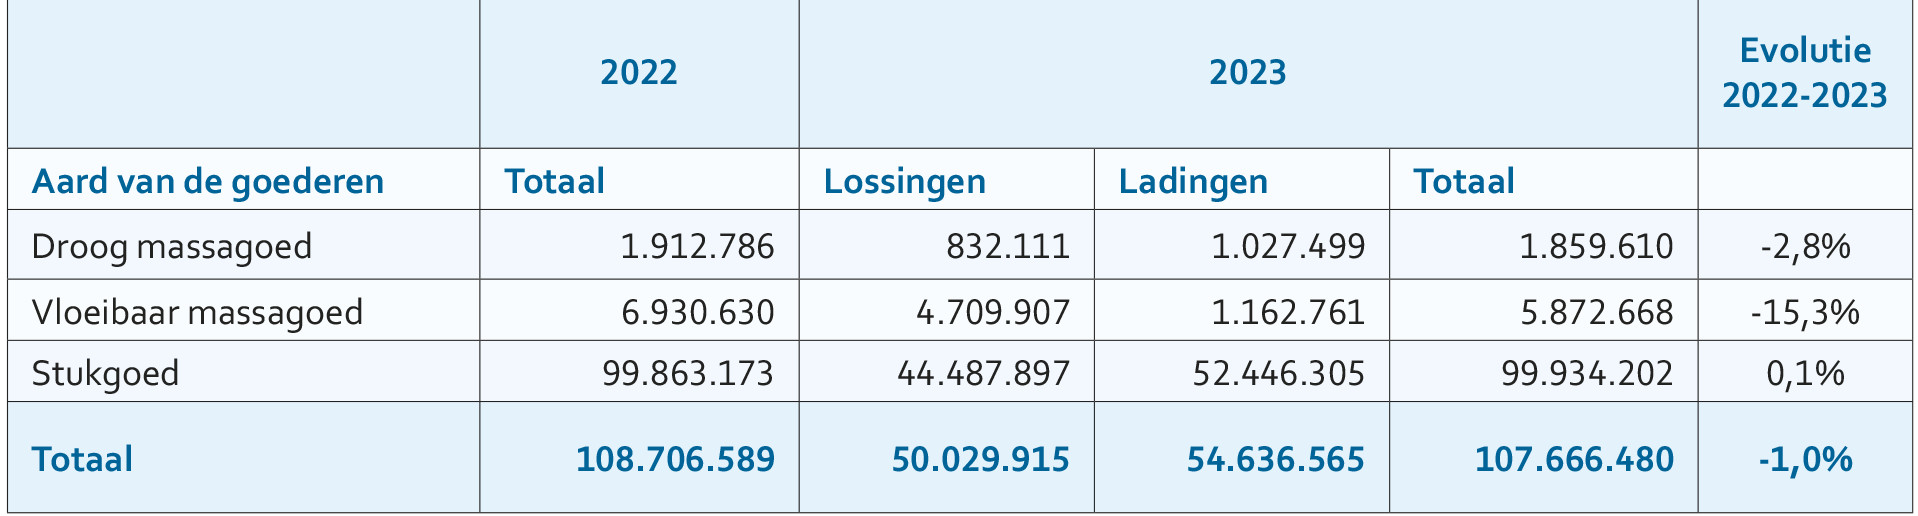 Maritieme trafiek Waaslandhaven volgens aard van de goederen (in ton) / left bank: maritime traffic according to type of goods (tonnes)